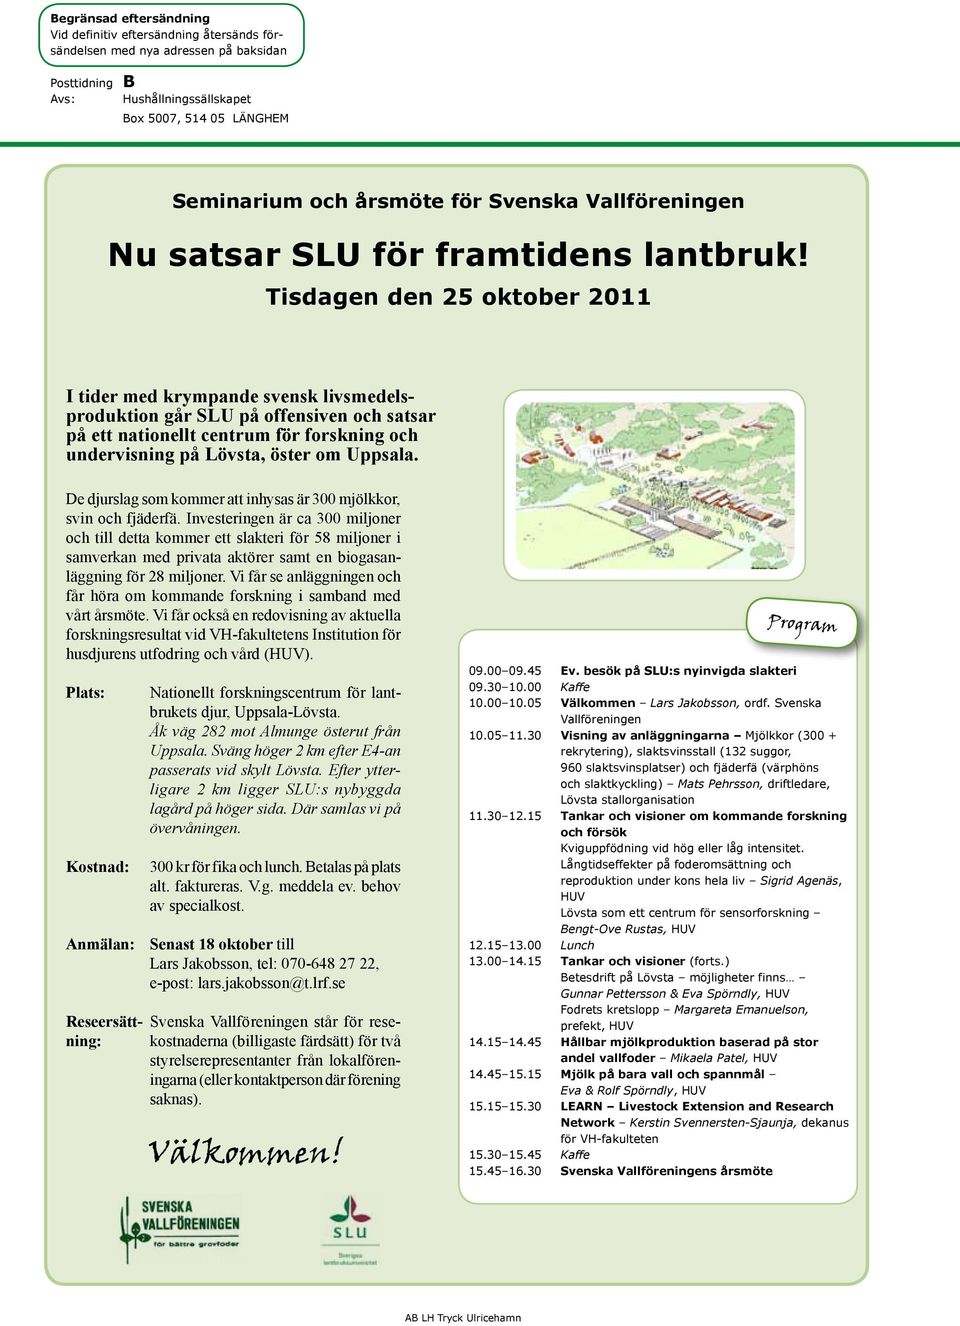 Tisdagen den 25 oktober 2011 I tider med krympande svensk livsmedelsproduktion går SLU på offensiven och satsar på ett nationellt centrum för forskning och undervisning på Lövsta, öster om Uppsala.